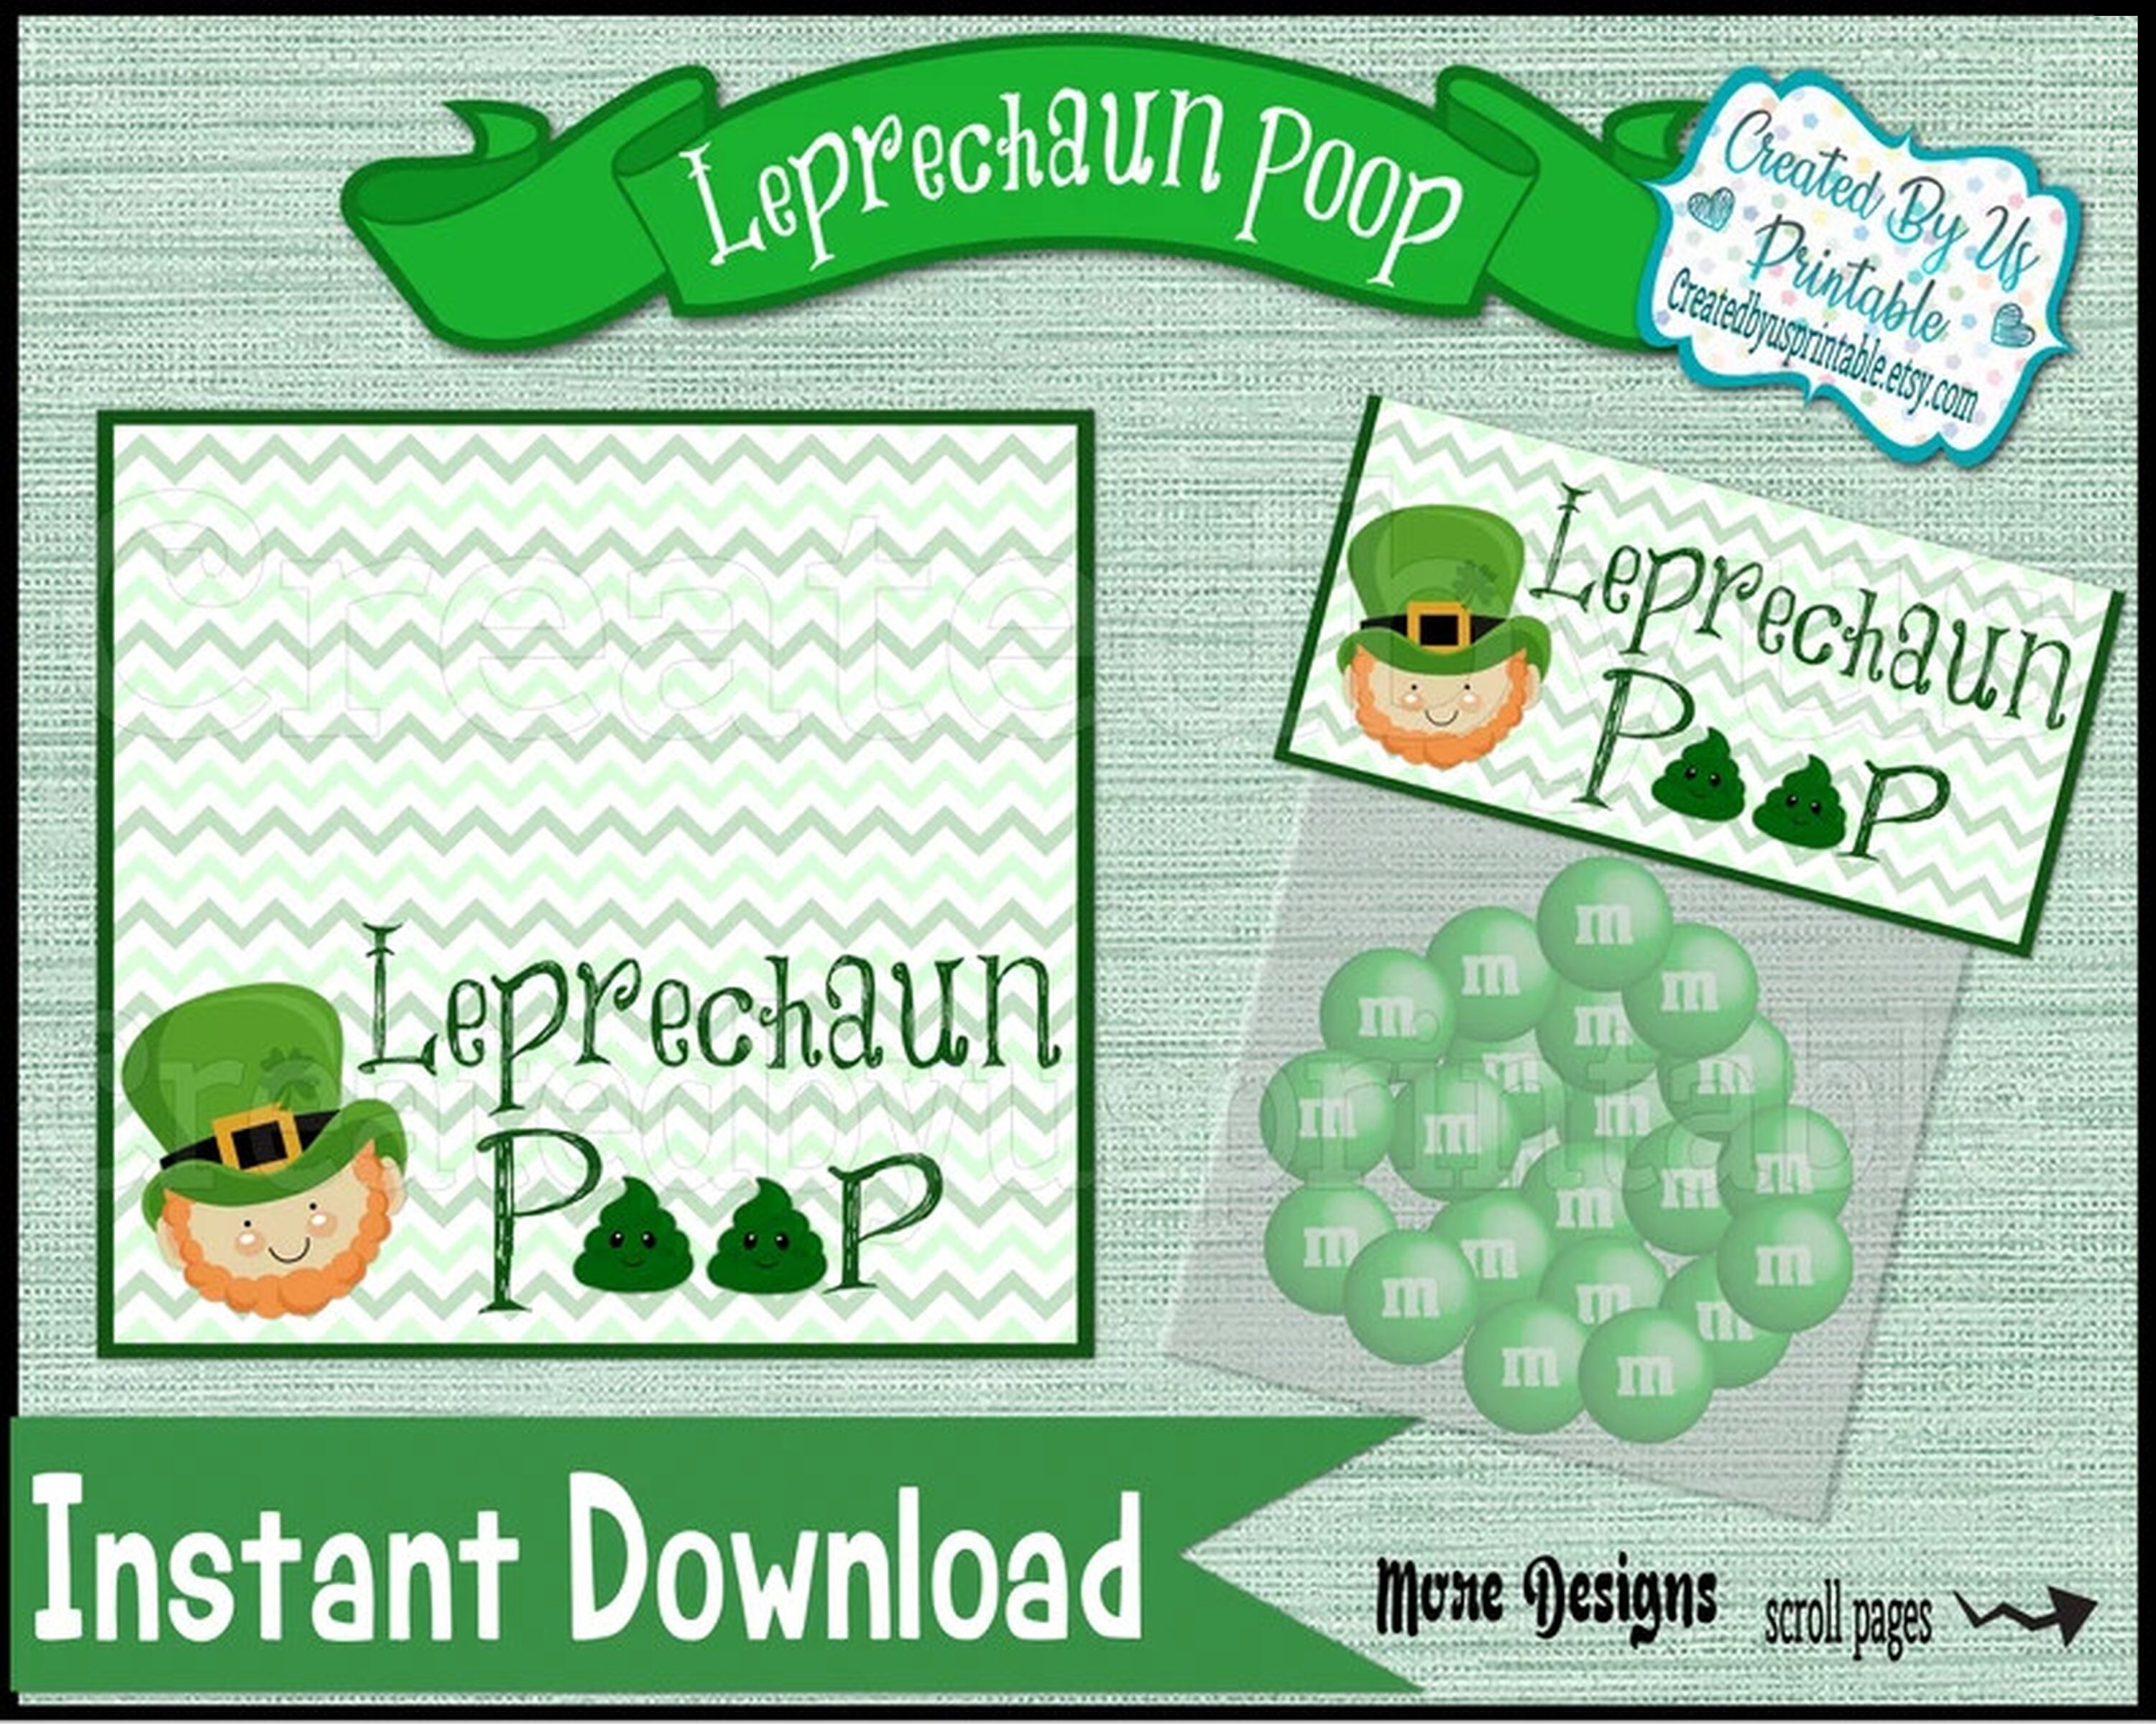 Leprechaun Poop Liquid Soap — Suds & Sarcasm